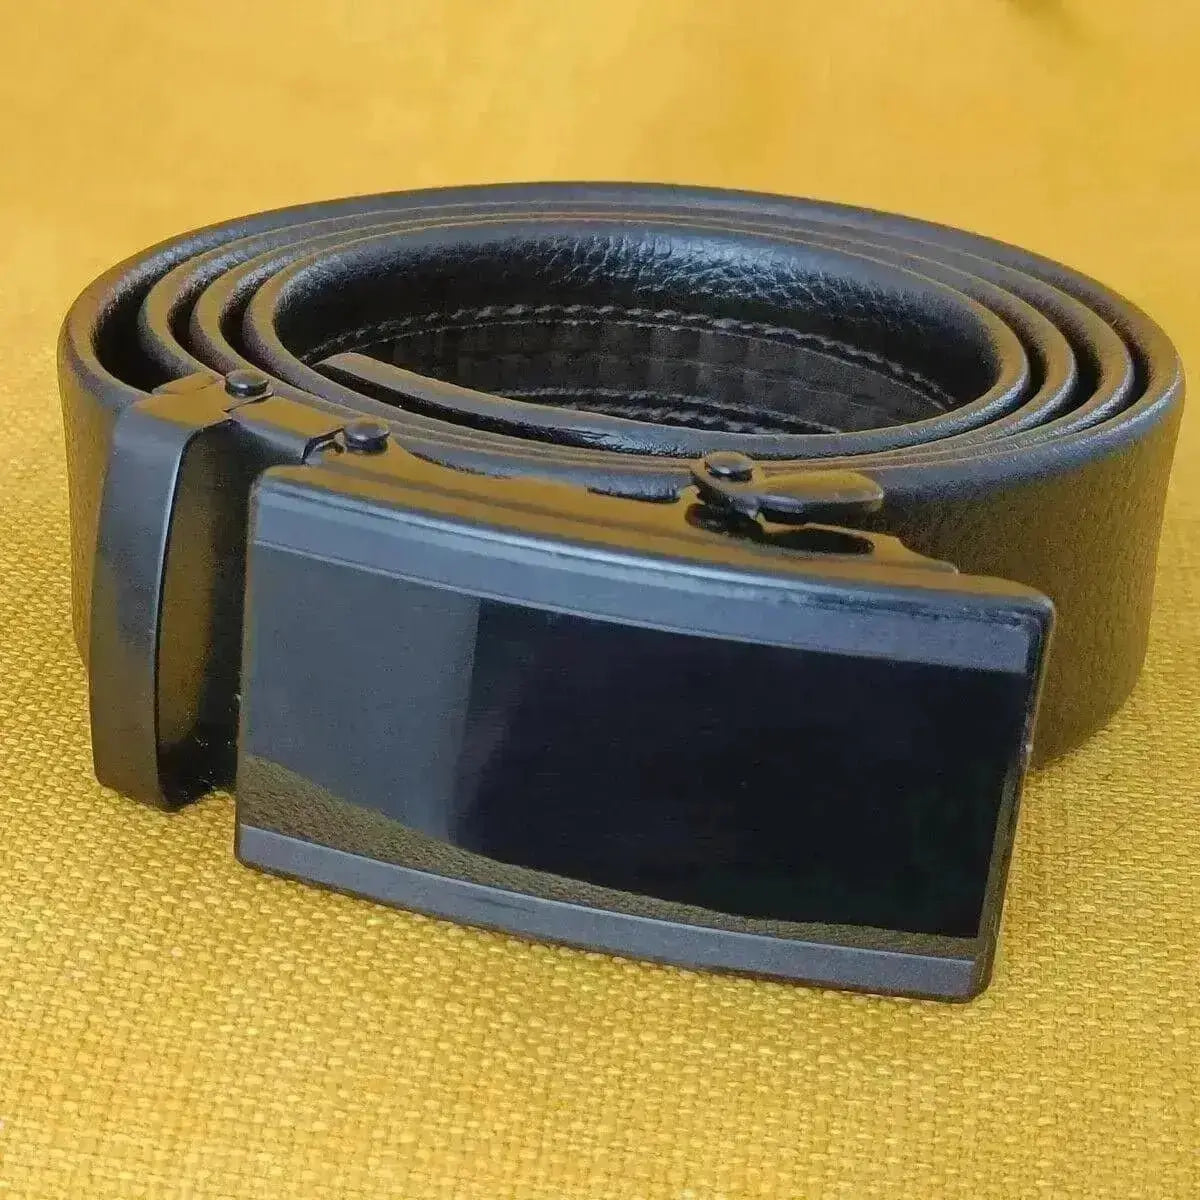 Microfiber Leather Belt For Men BLACK